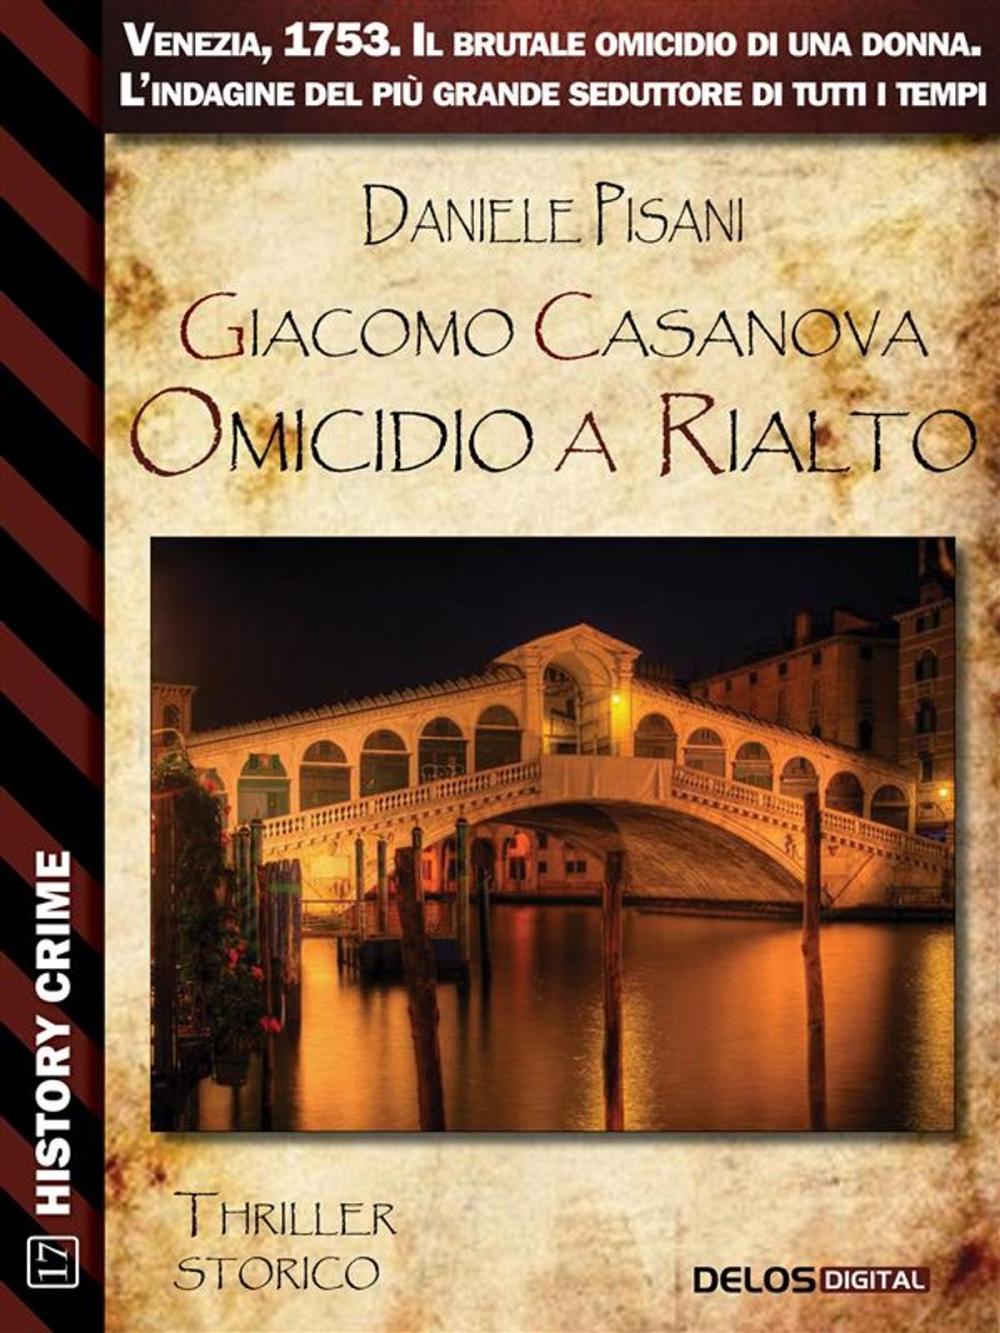 Big bigCover of Giacomo Casanova Omicidio a Rialto